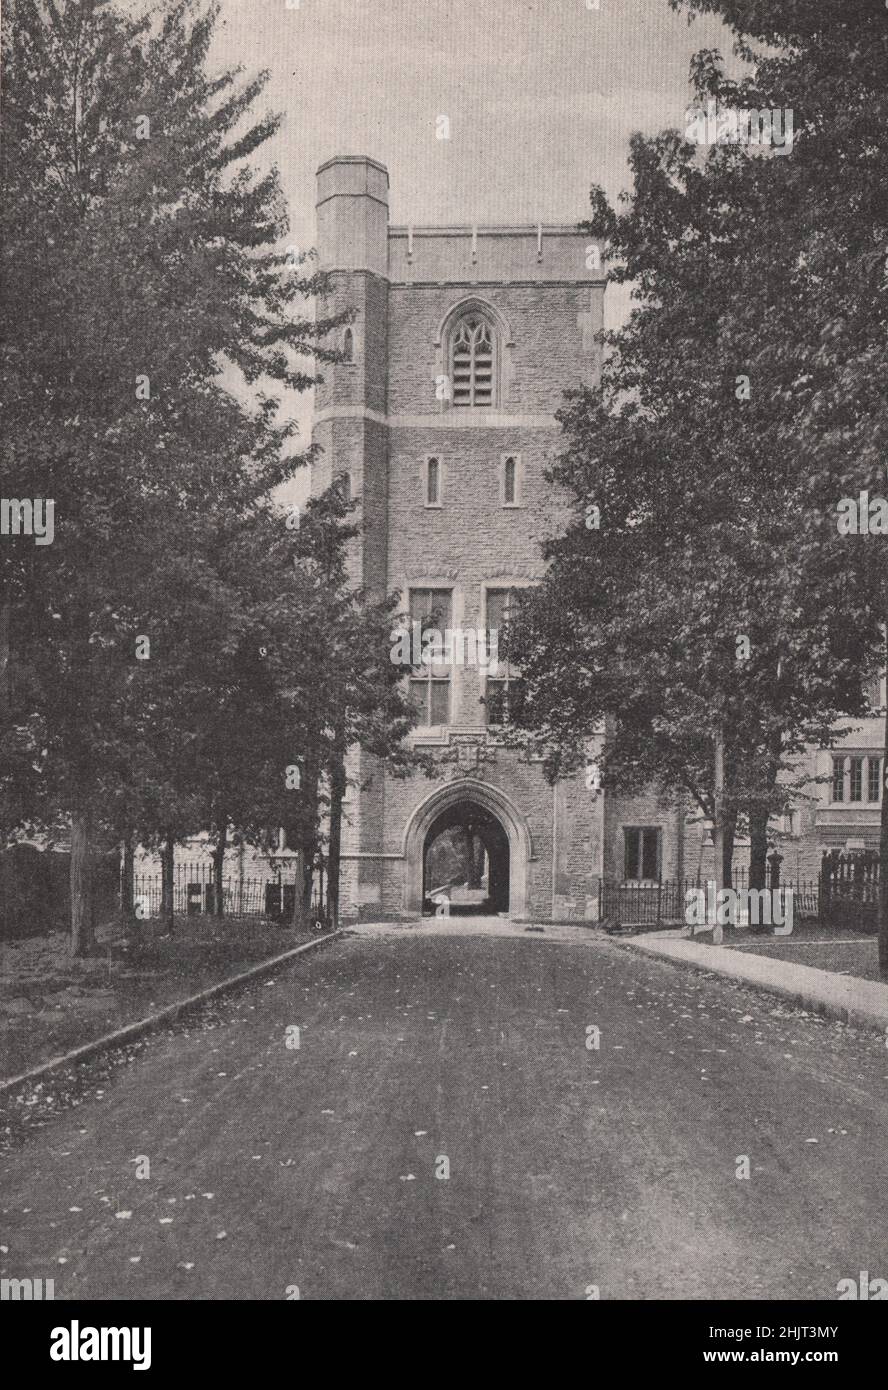 St. Mary's Gate, Victoria College, près de Queen's Park. Ontario. Toronto (1923) Banque D'Images